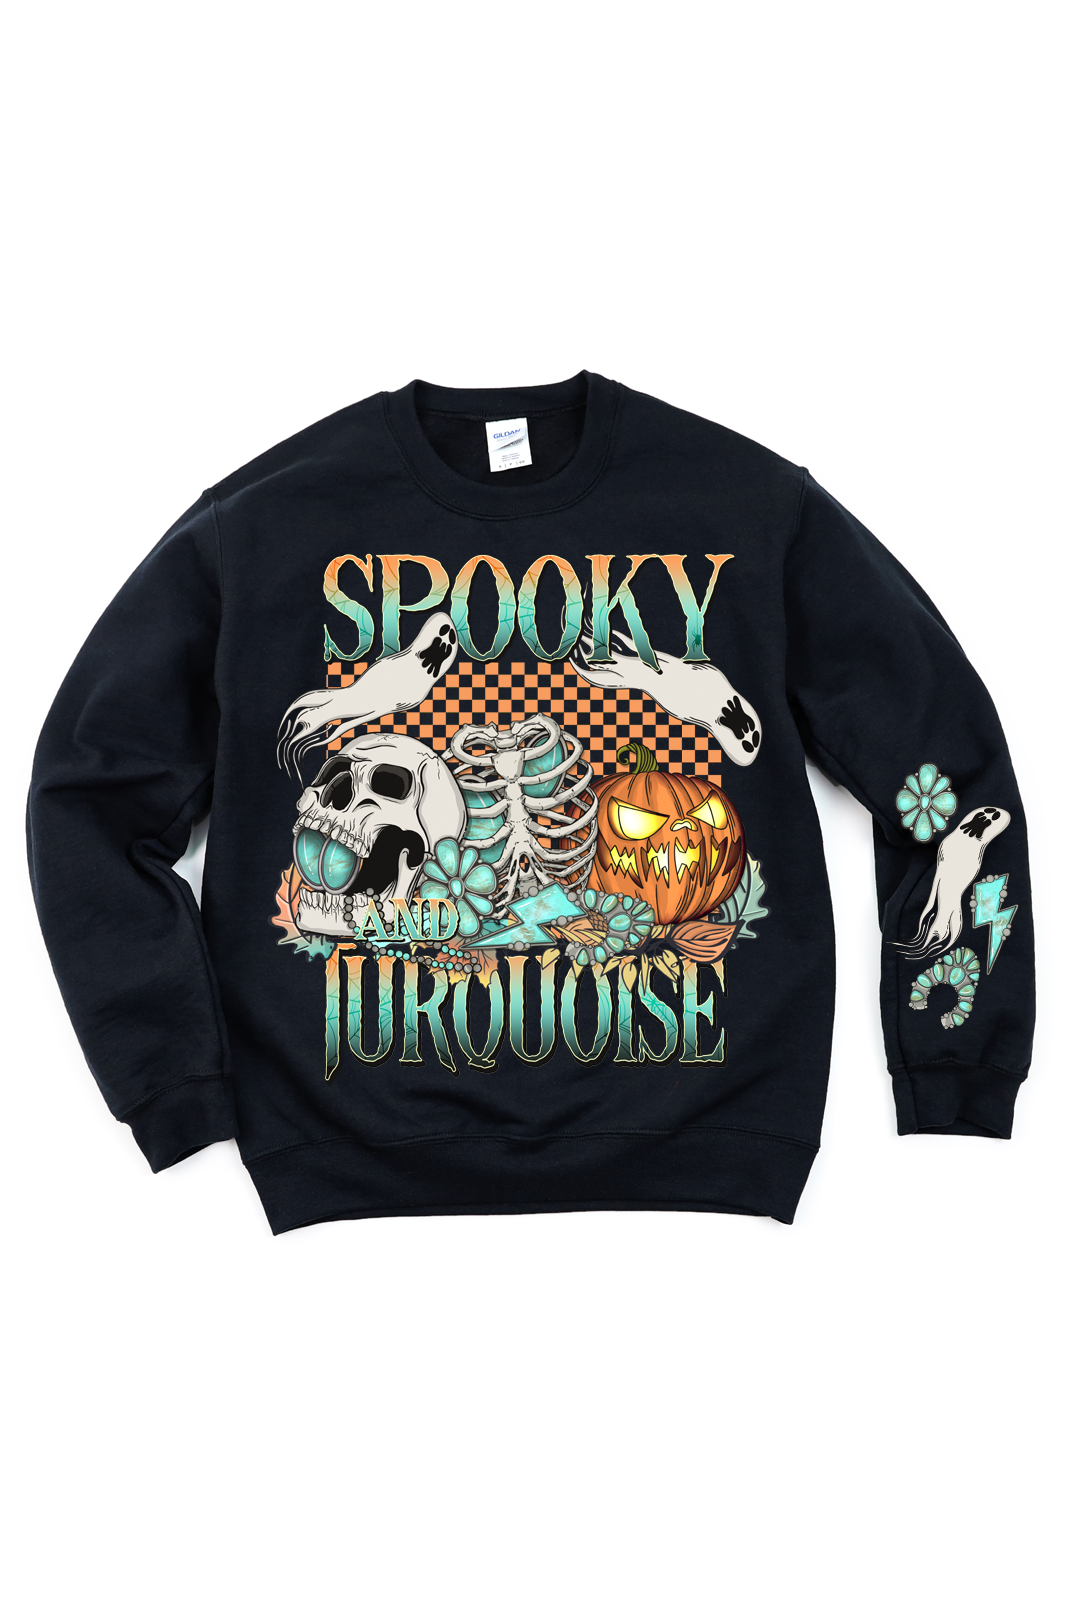 Spooky Turquoise Tee/Sweatshirt